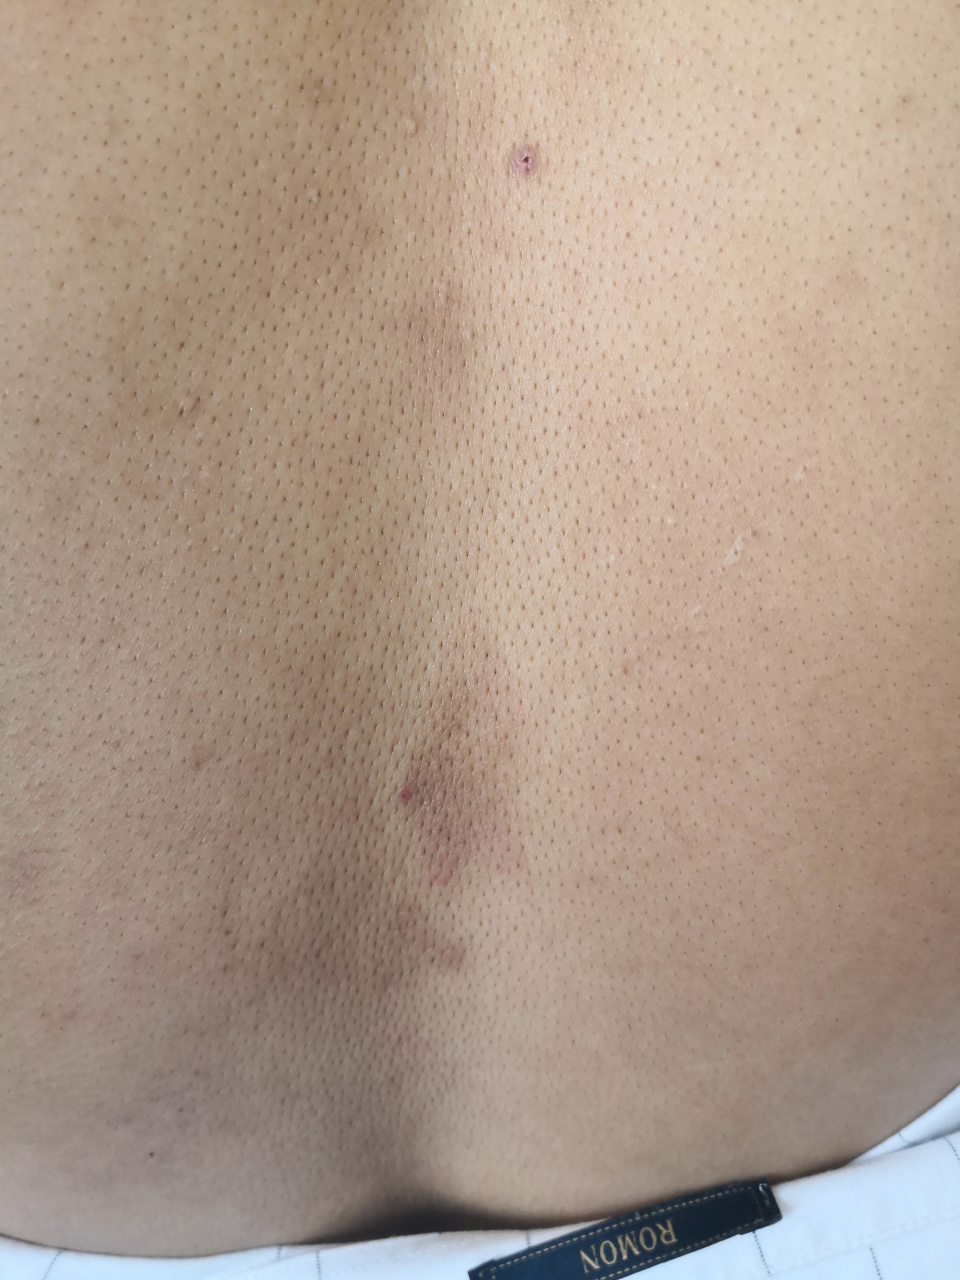 背部片状斑块苔藓样变皮疹考虑特应性皮炎的诊断